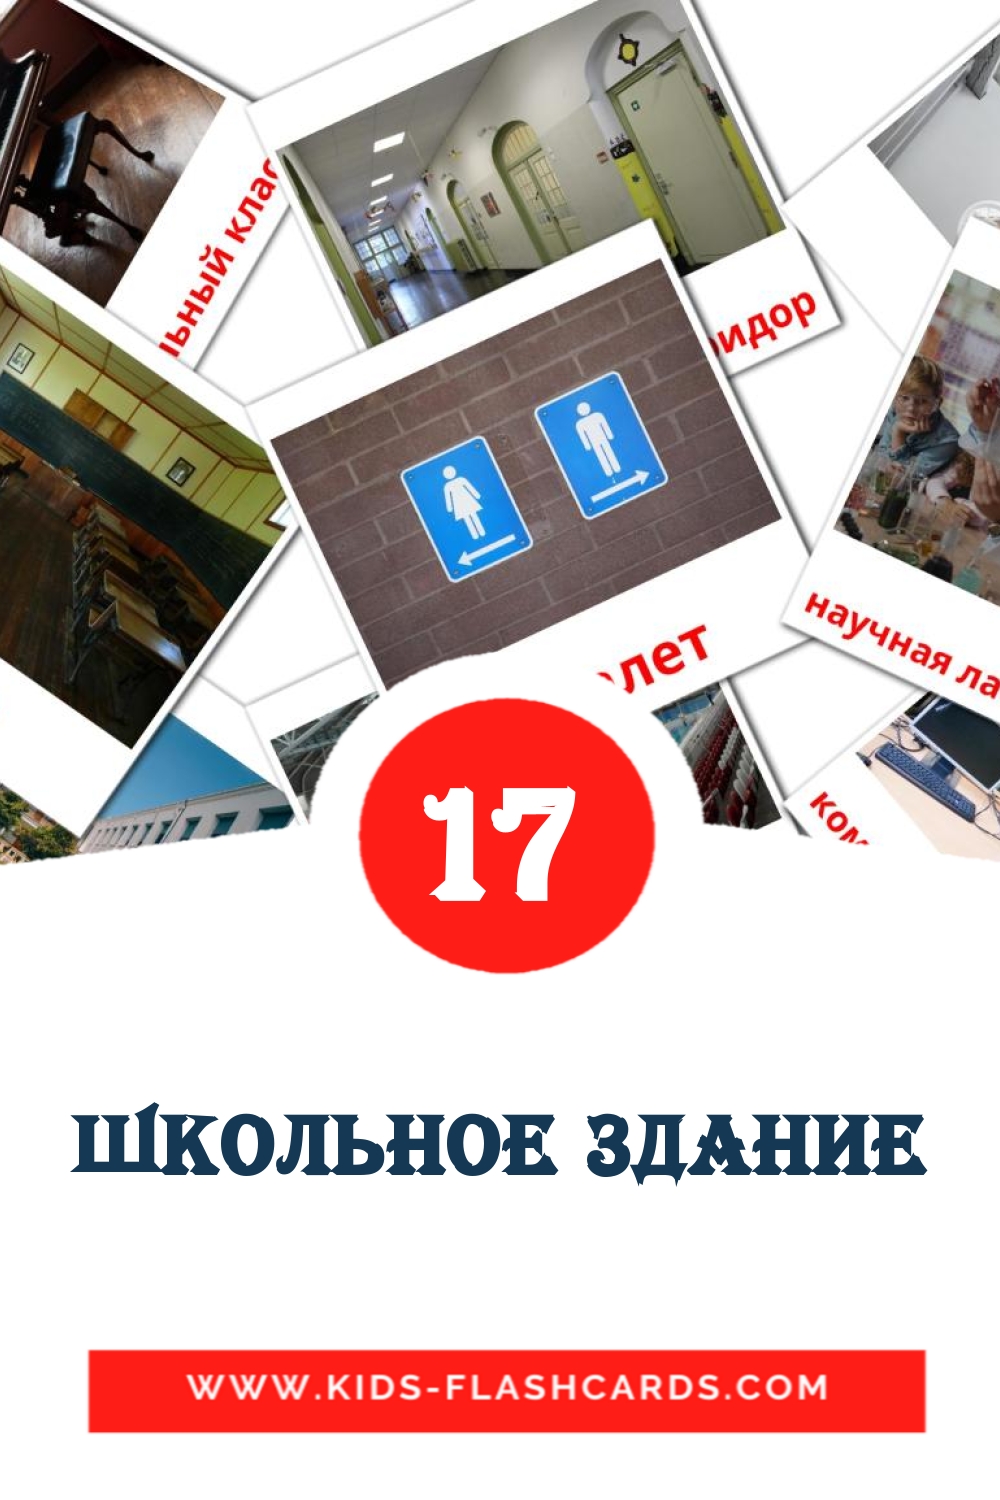 17 tarjetas didacticas de Школьное здание para el jardín de infancia en ruso